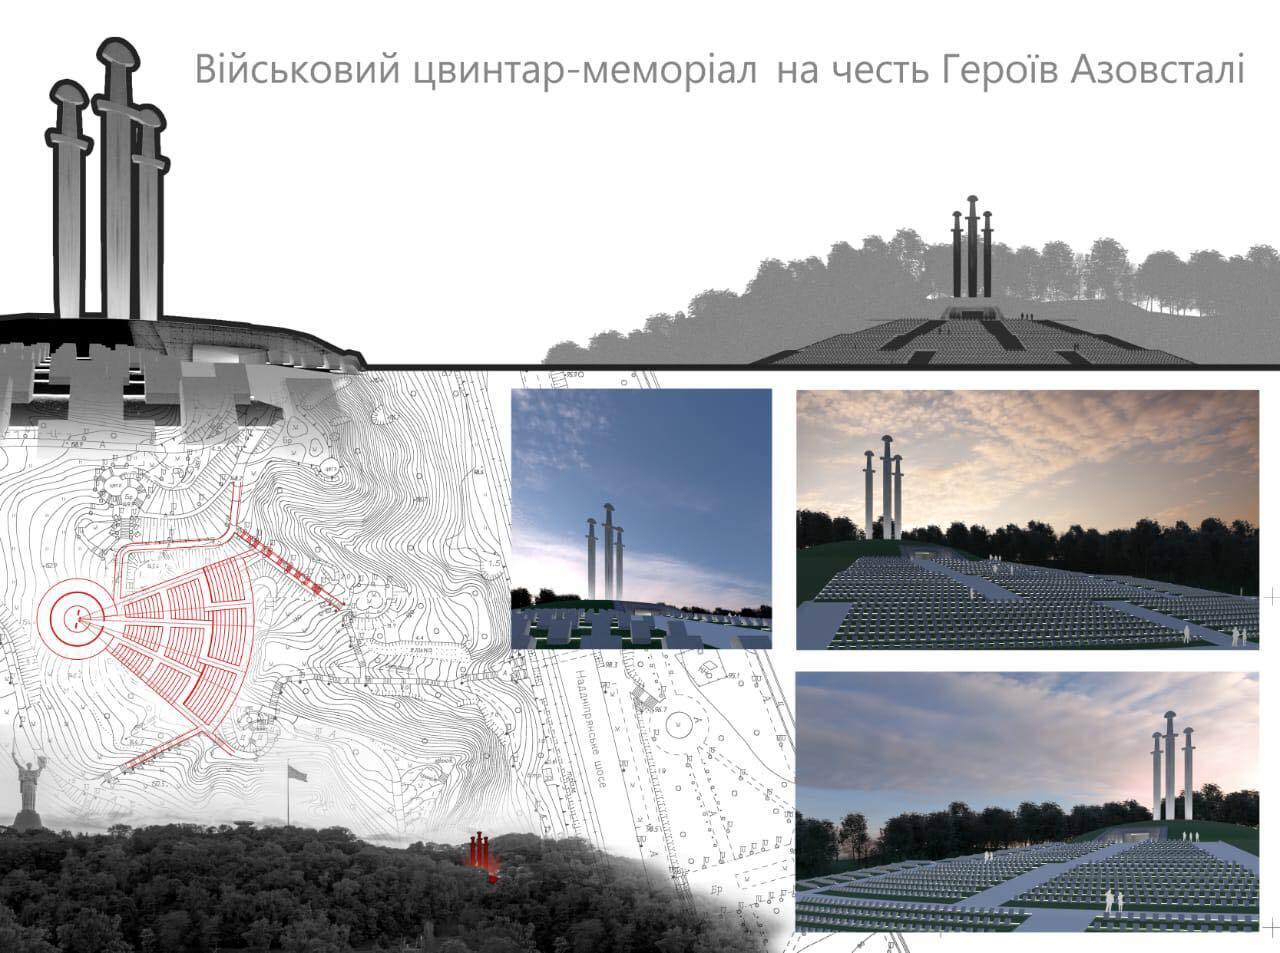 В Киеве установят мемориал в честь героев ''Азовстали'' на Певческом поле